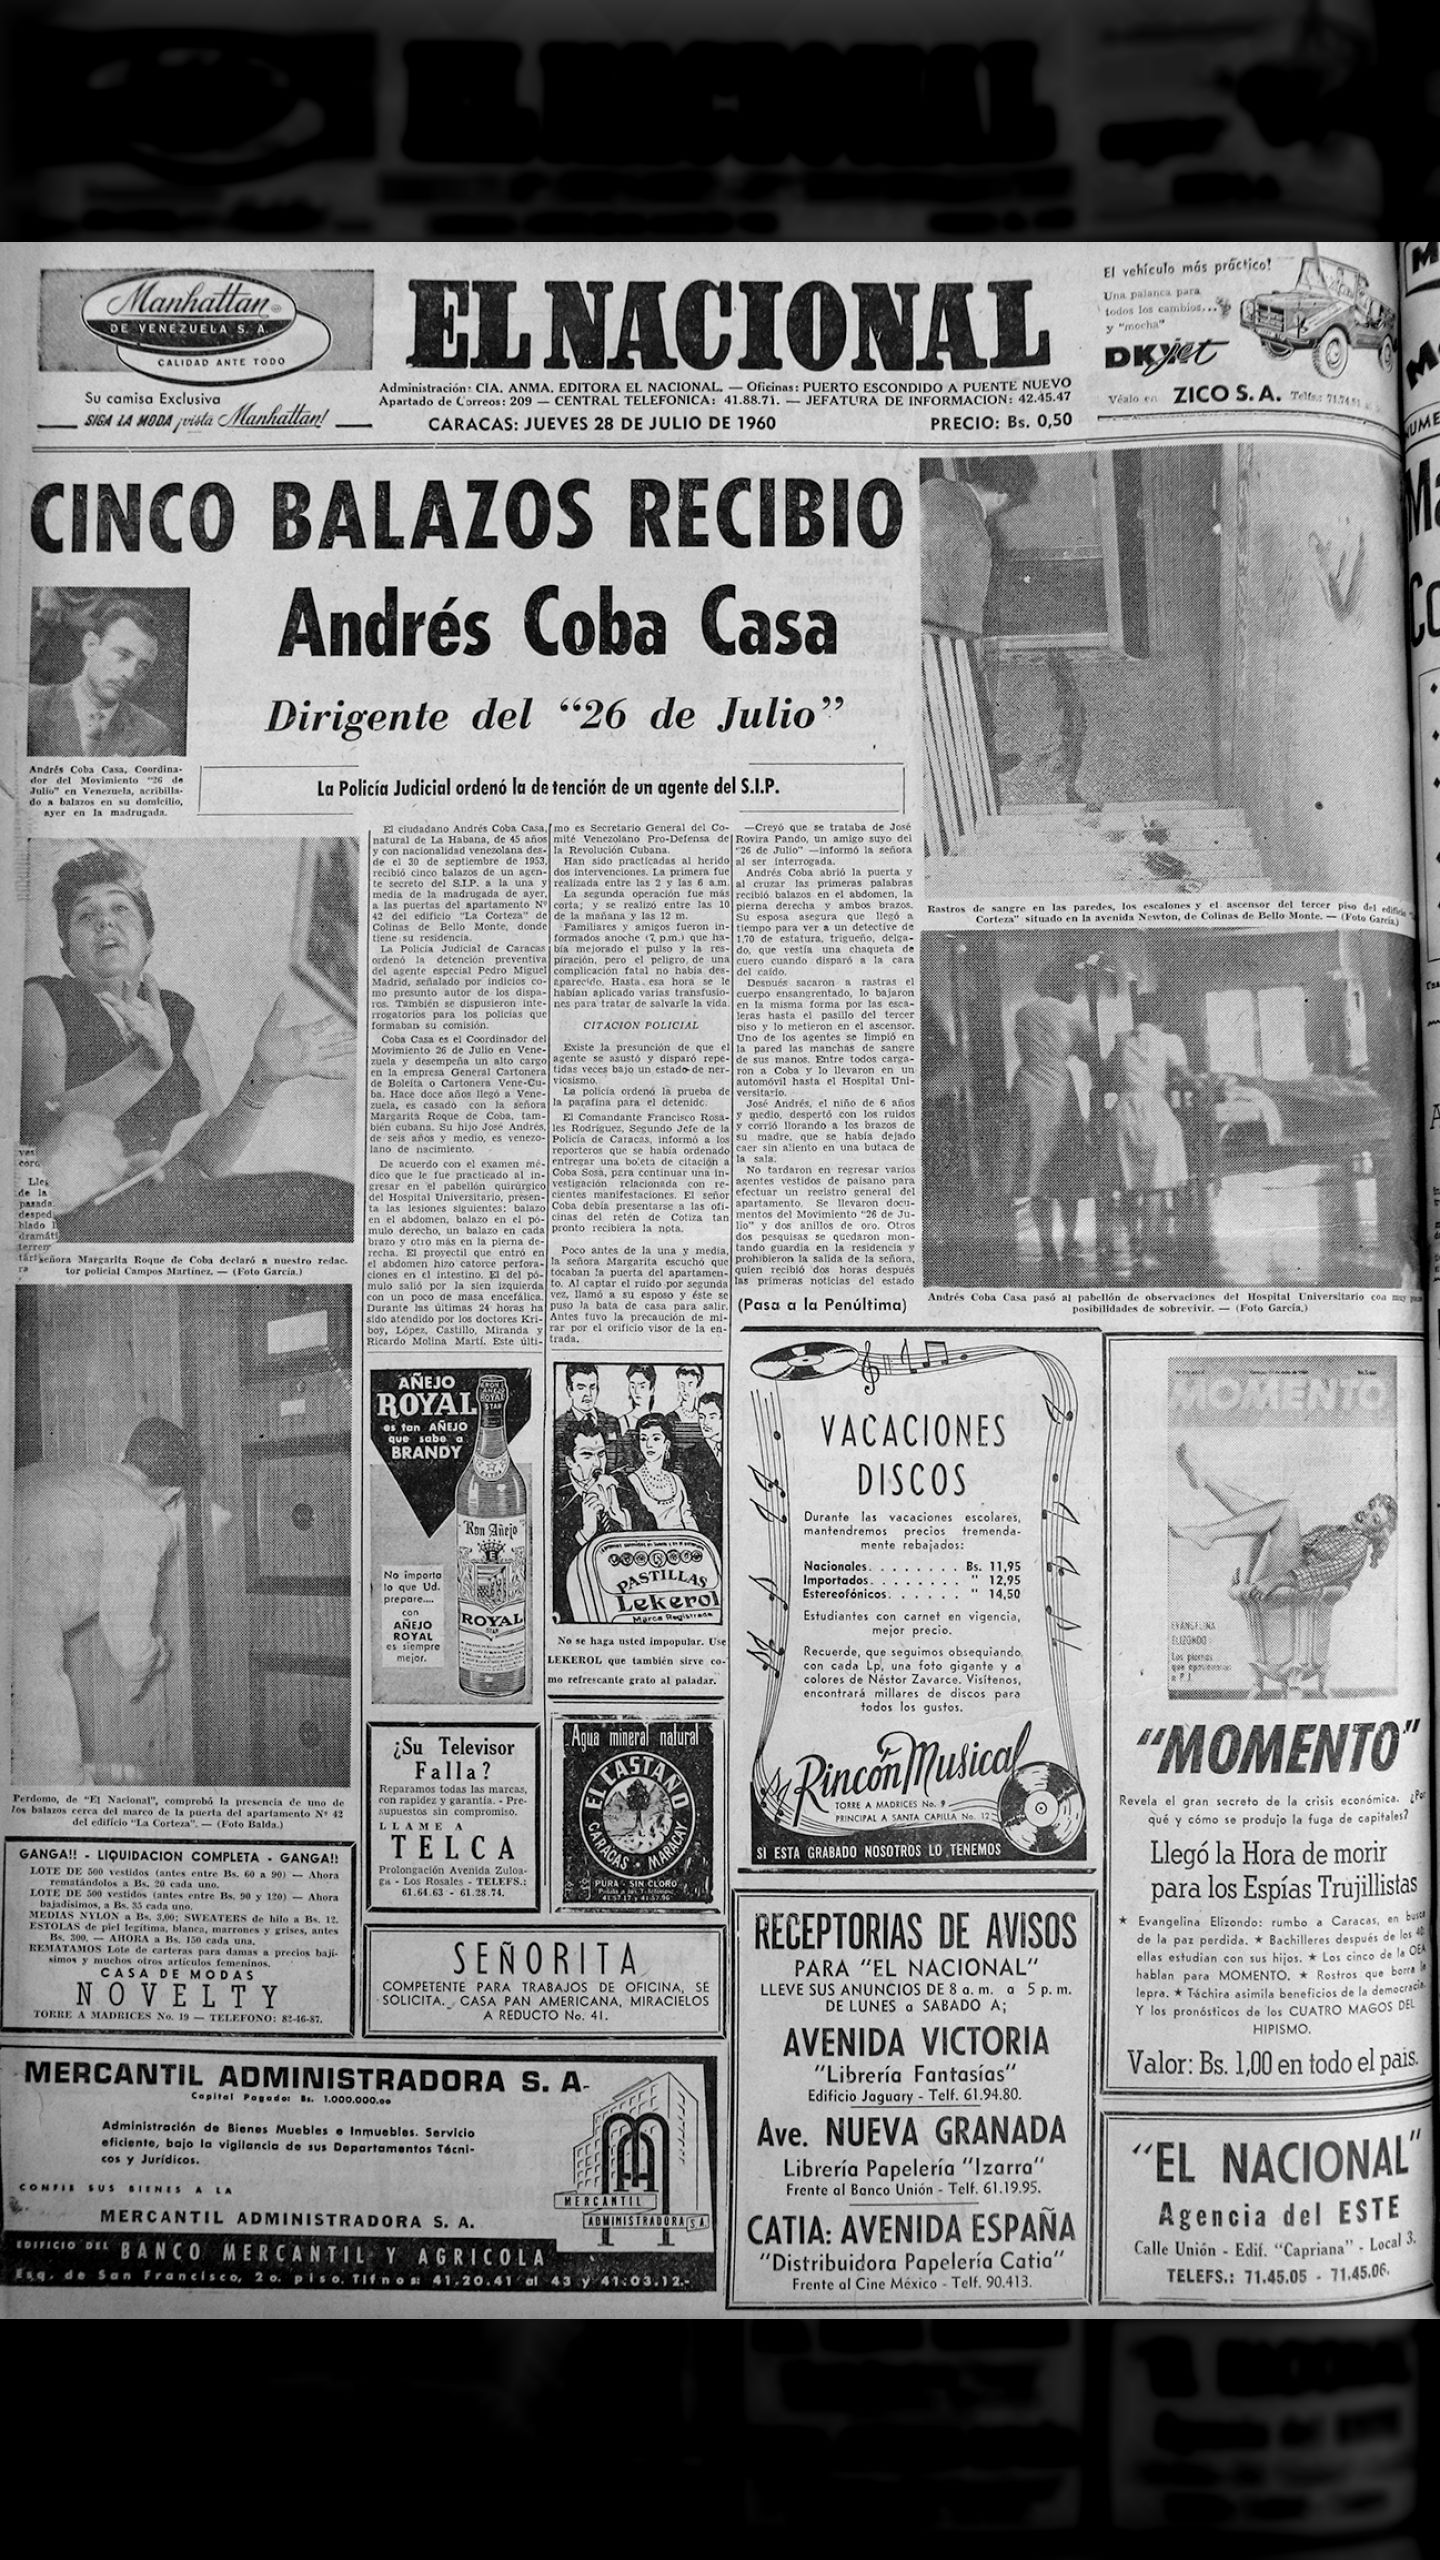 Cinco balazos recibió Andrés Coba Casa Dirigente del movimiento "26 de julio" (El Nacional, 28 de julio 1960)